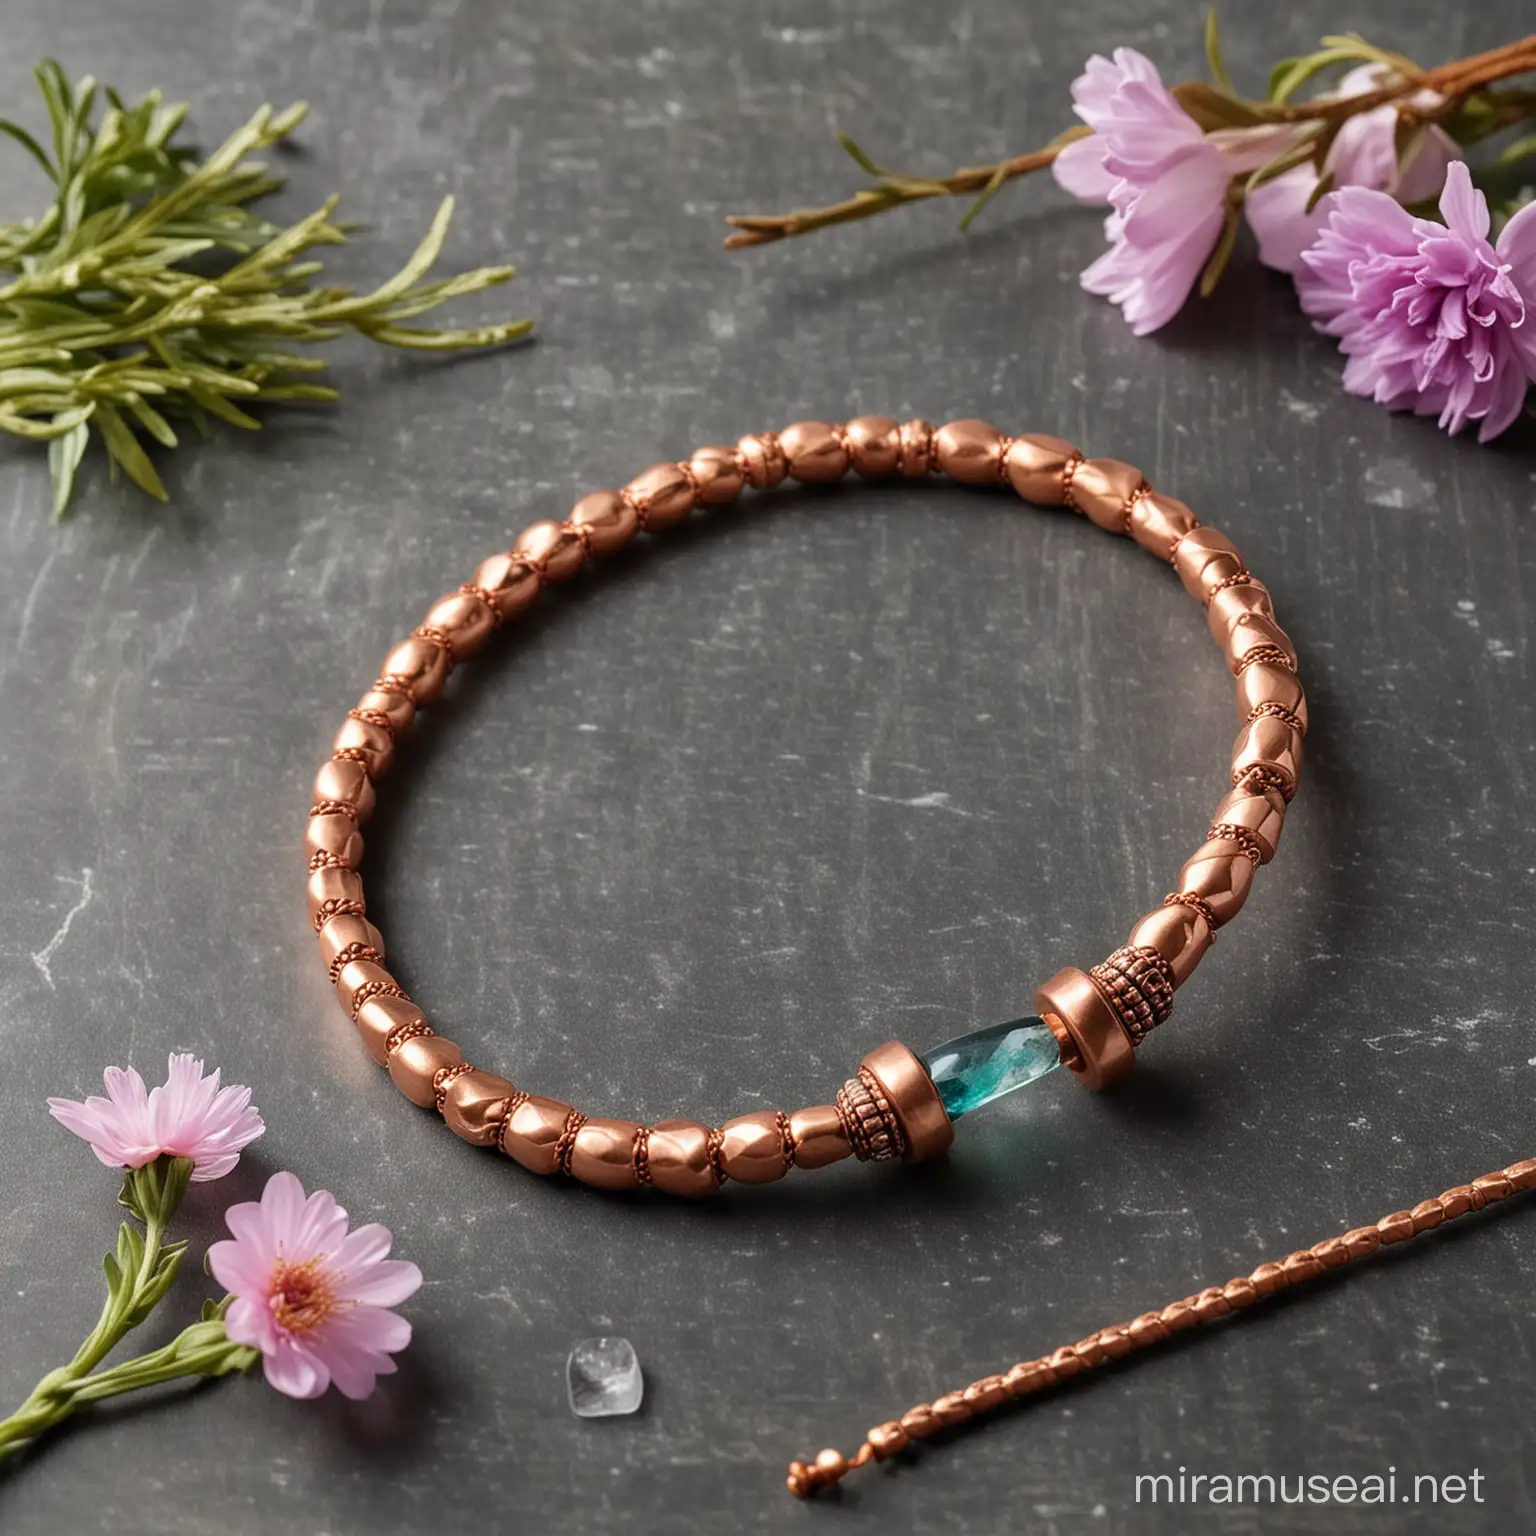 crear una imagen de brazalete de cobre con imanes por dentro, acompañada de cuarzos, incienso y flores